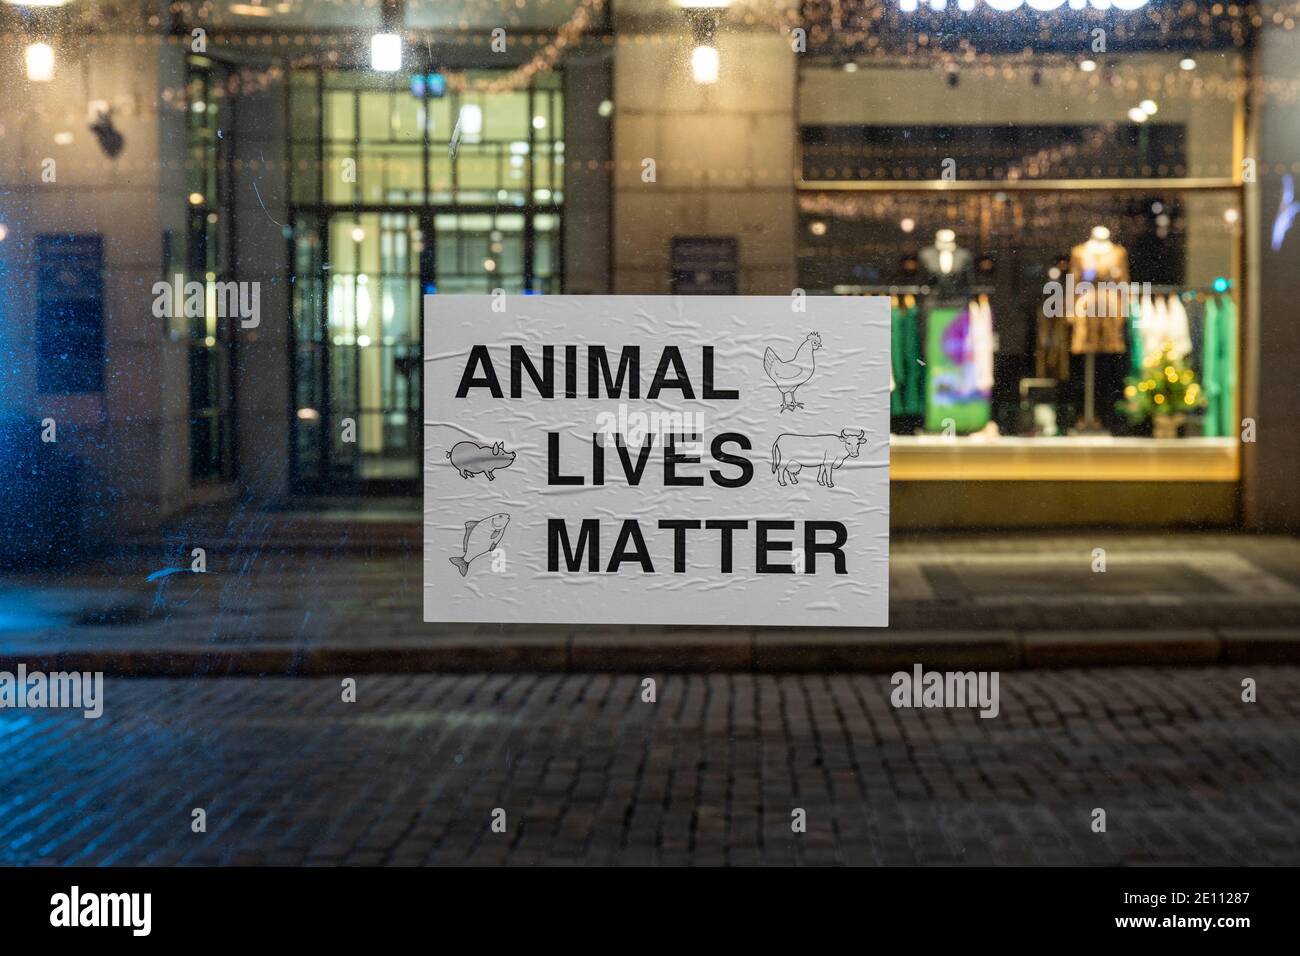 La vie des animaux compte. Autocollant apposé sur une vitre d'arrêt de tramway. Helsinki, Finlande. Banque D'Images